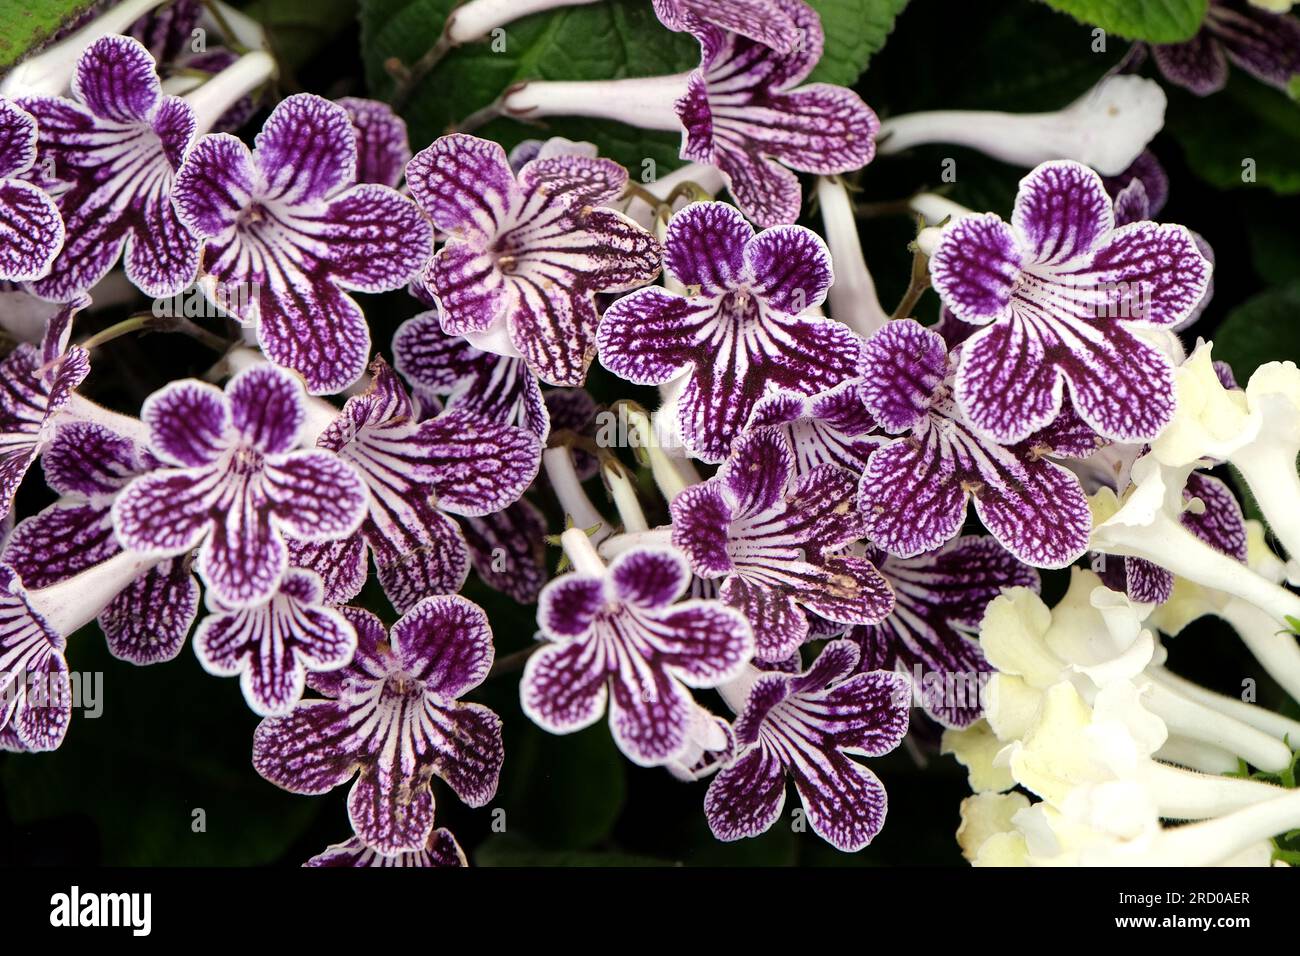 Streptocarpus, Cape primrose, 'Polka Dot Purple' in flower. Stock Photo